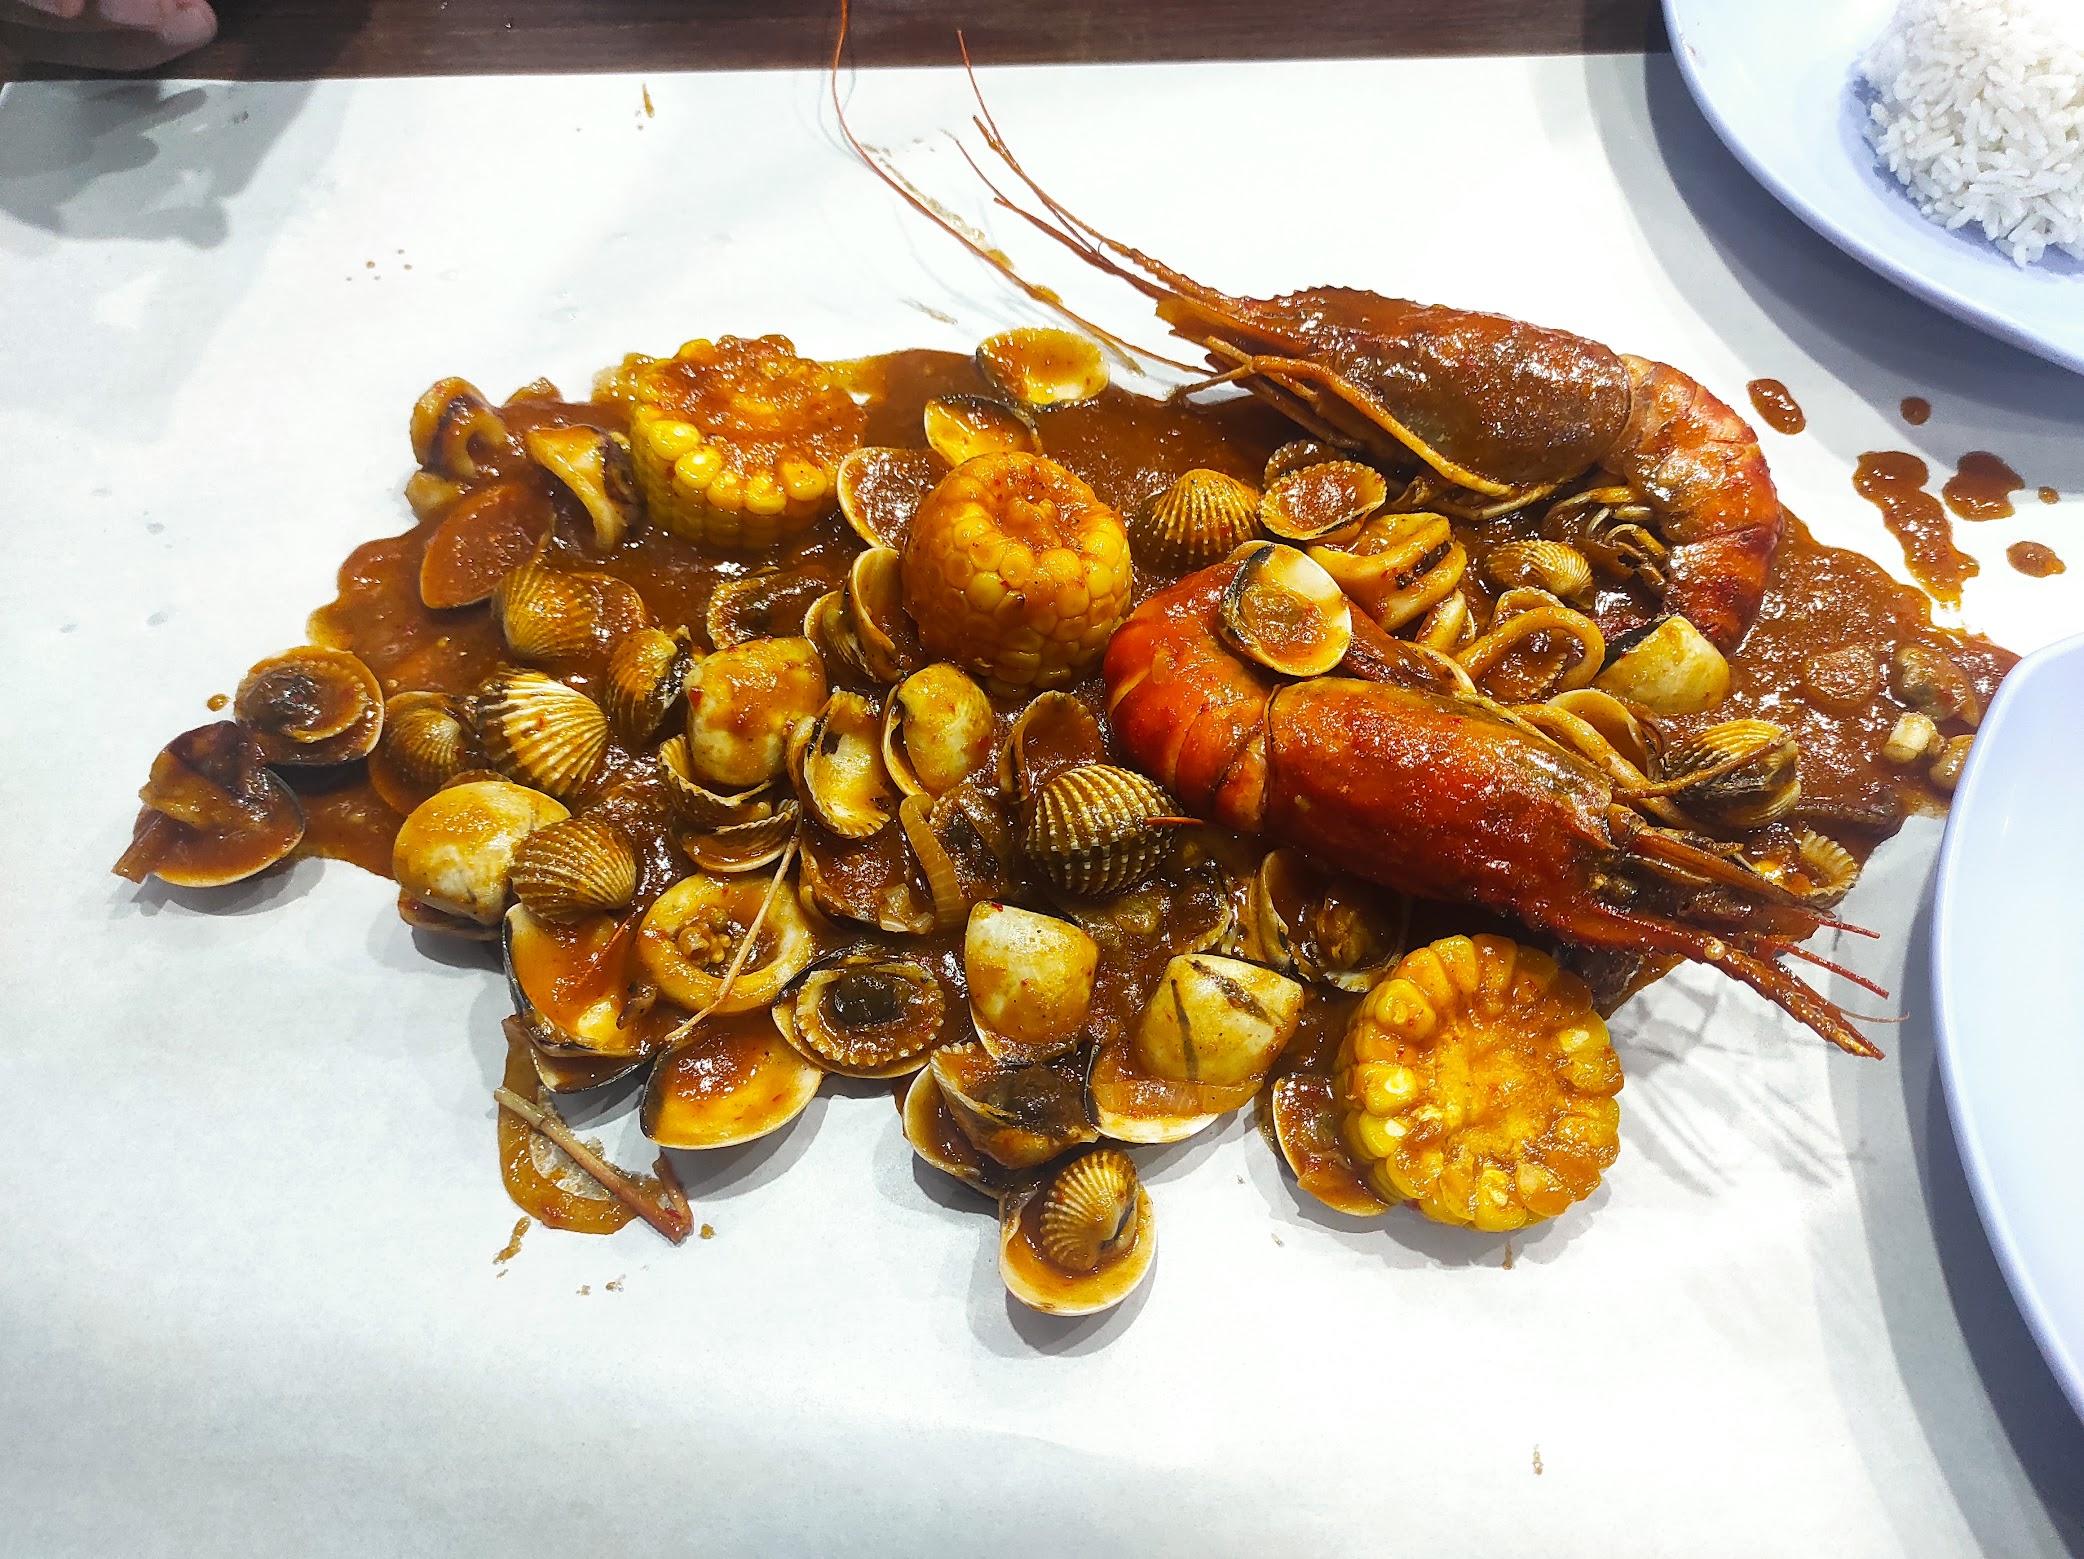 Kedai Kerang Denz Jarot (Sea Food) review